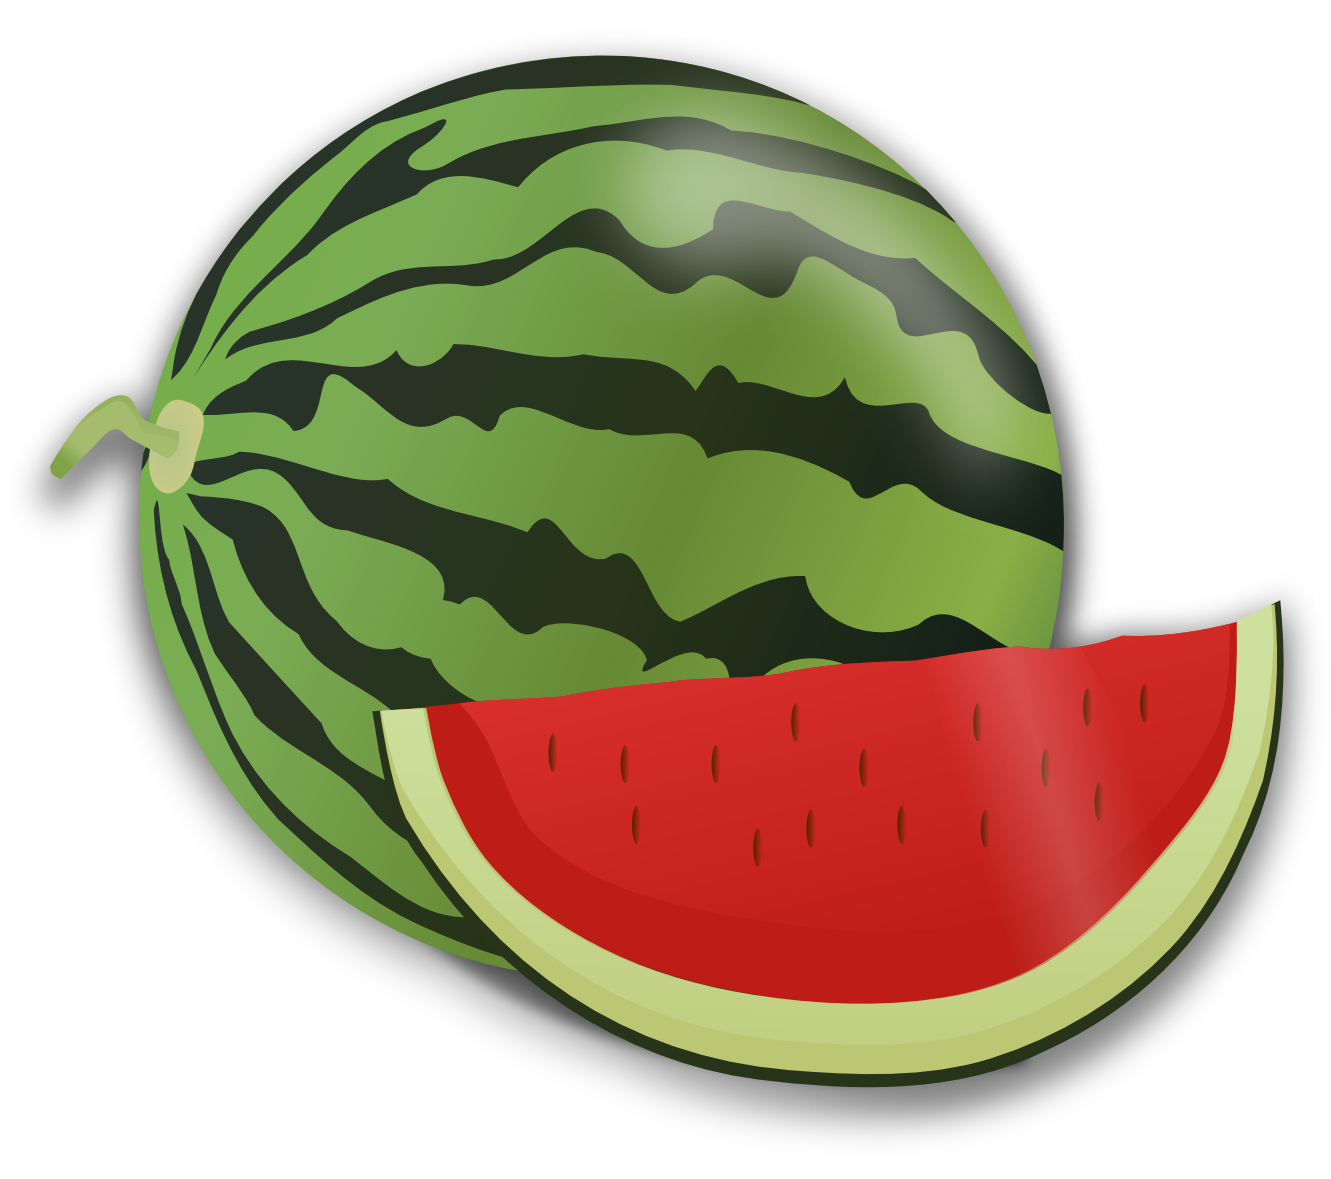 Watermelon slice cliparts